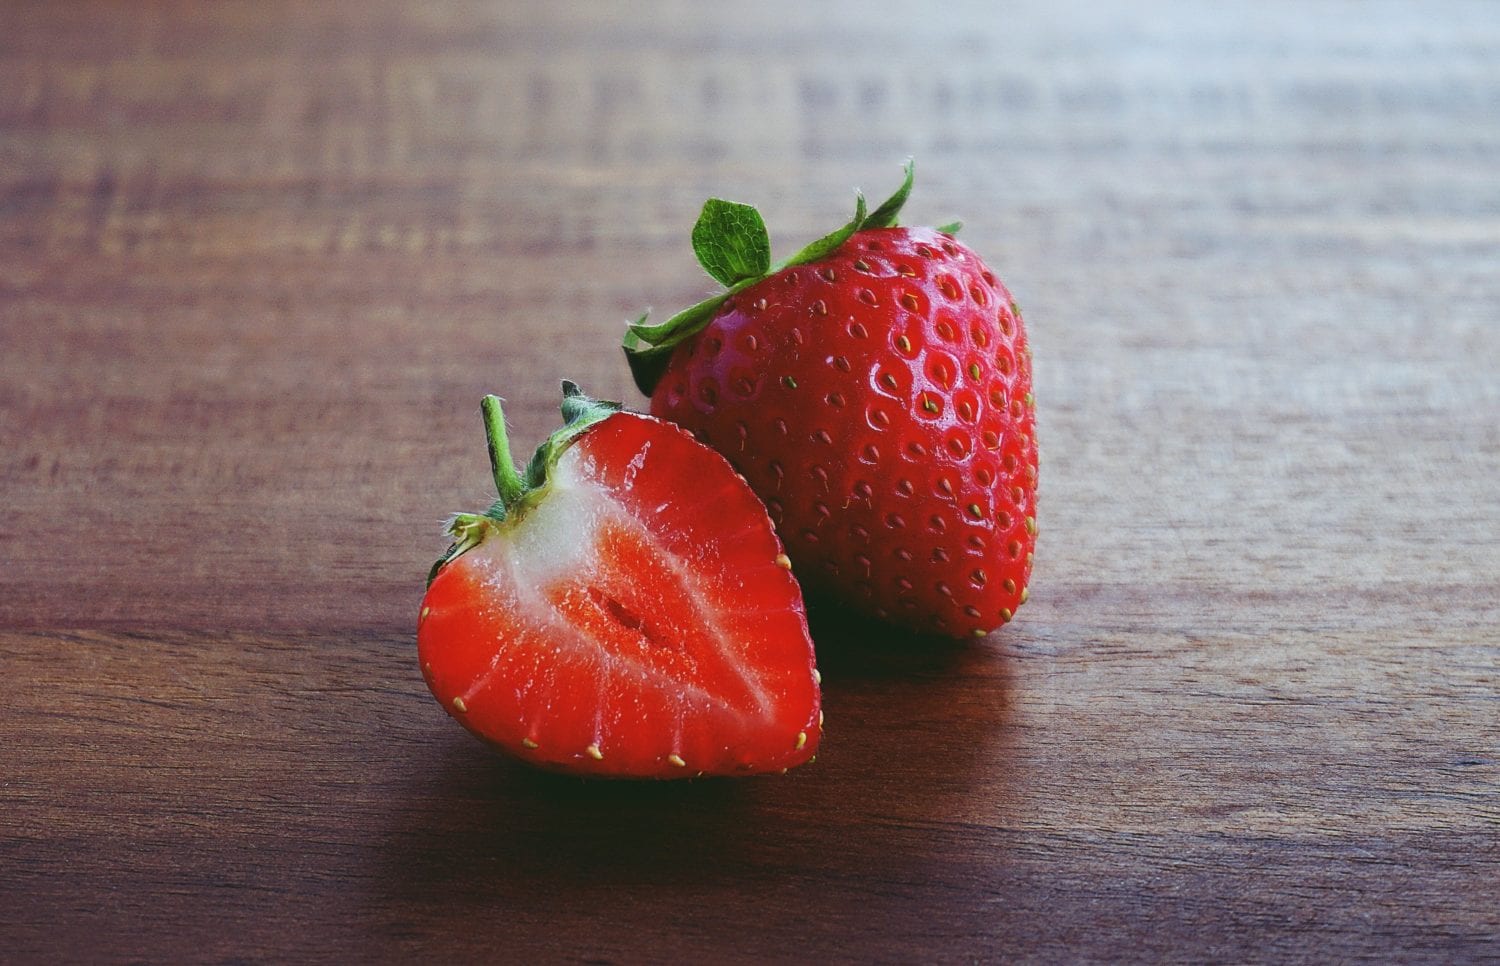 Pesticides interdits dans les fraises espagnoles: Tout le monde laisse  faire – L'Express